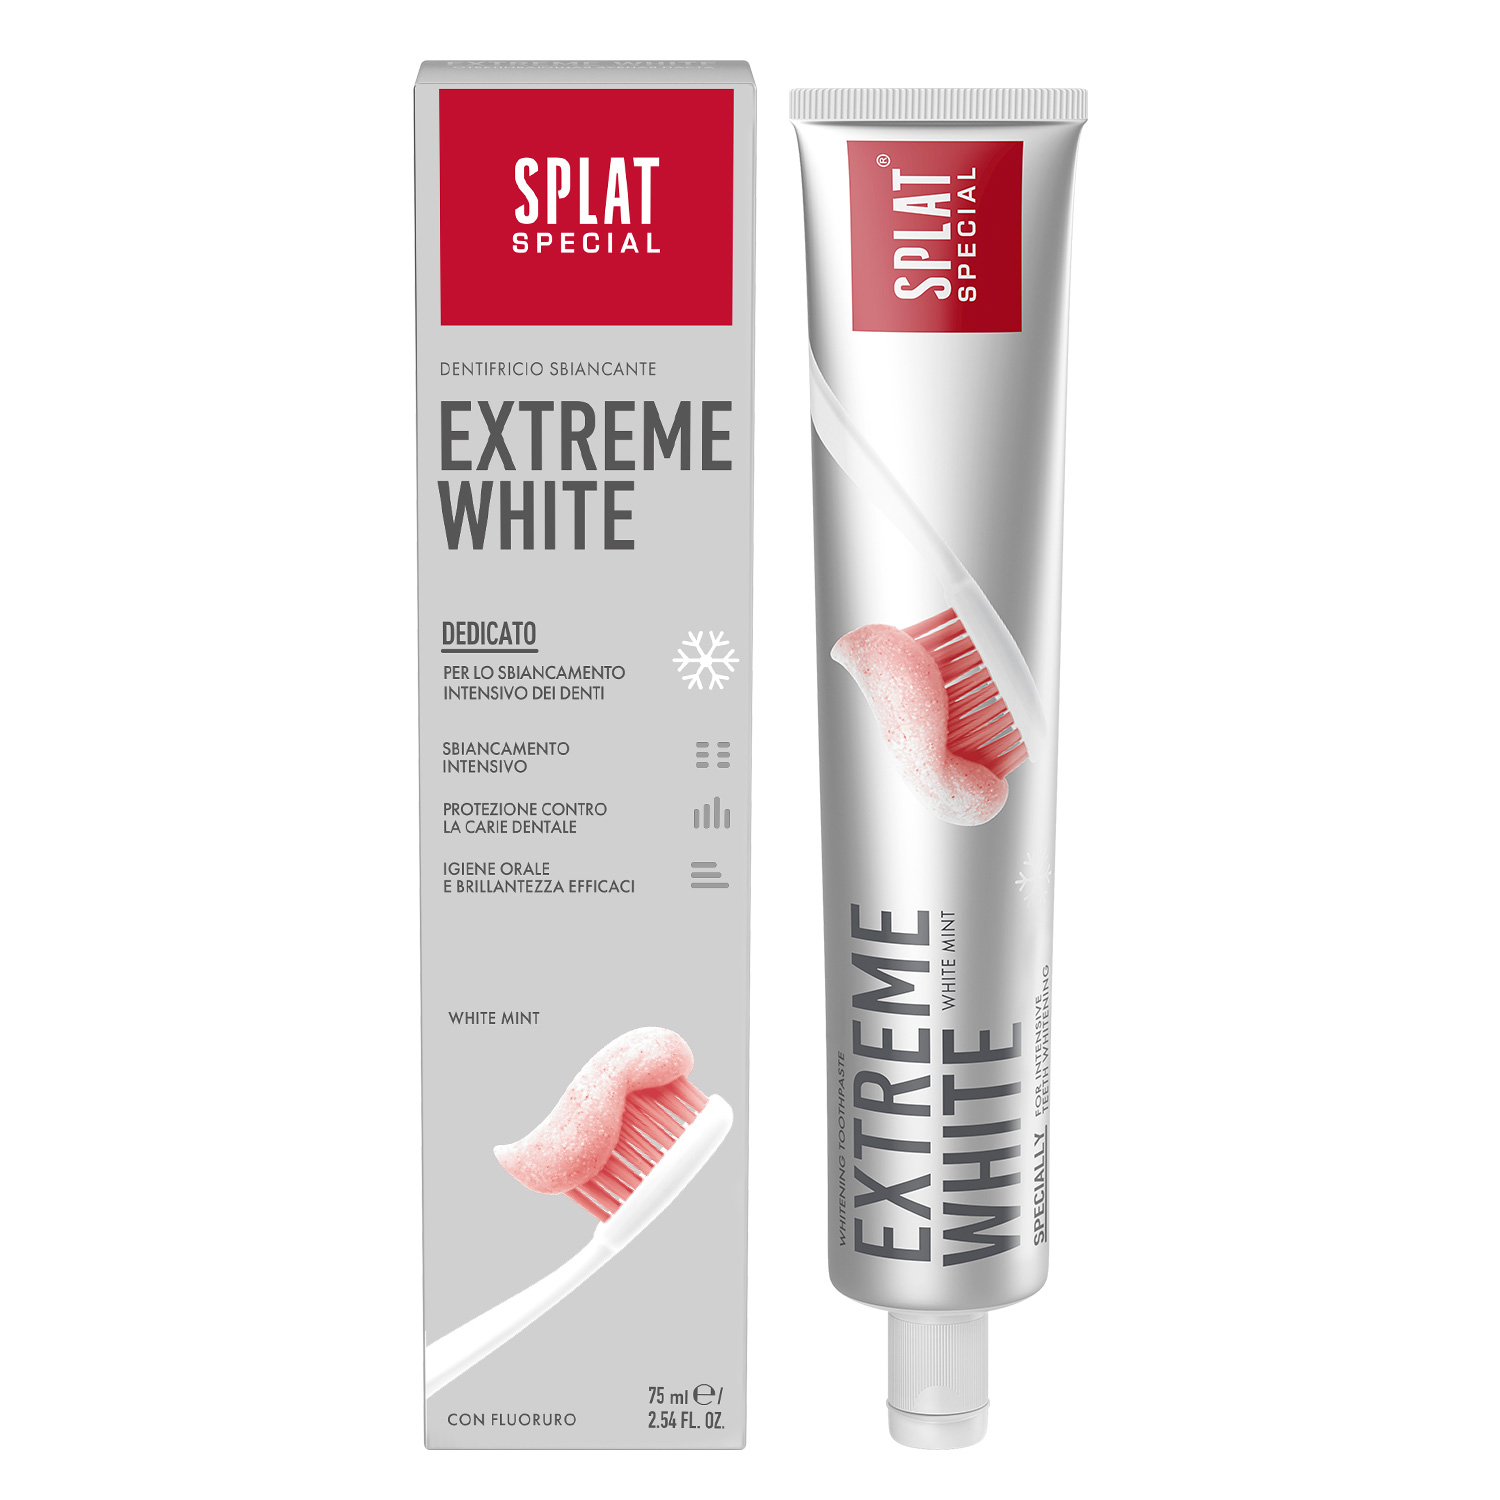 Splat Special Extreme White Whitening Toothpaste 75ml